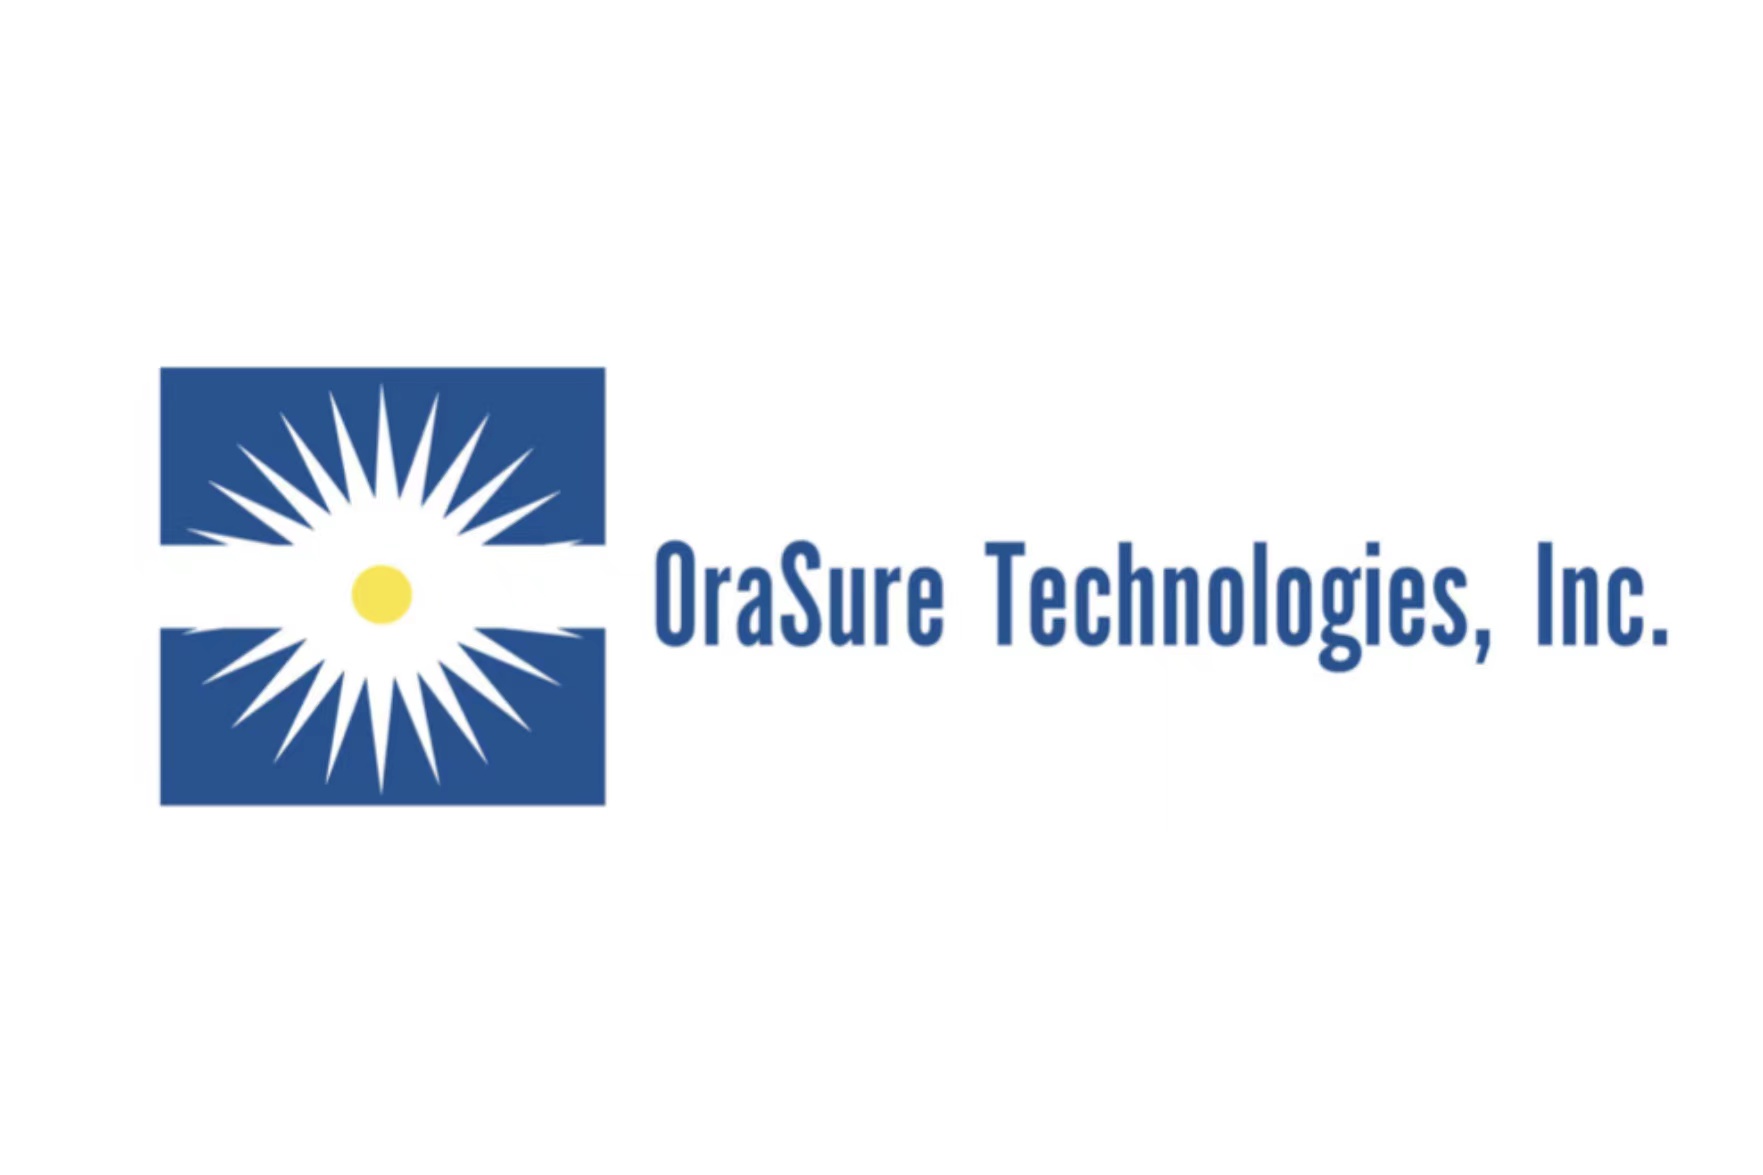 ORASURE REPORTS Q4 23 REVENUE OF $75.9 MILLION